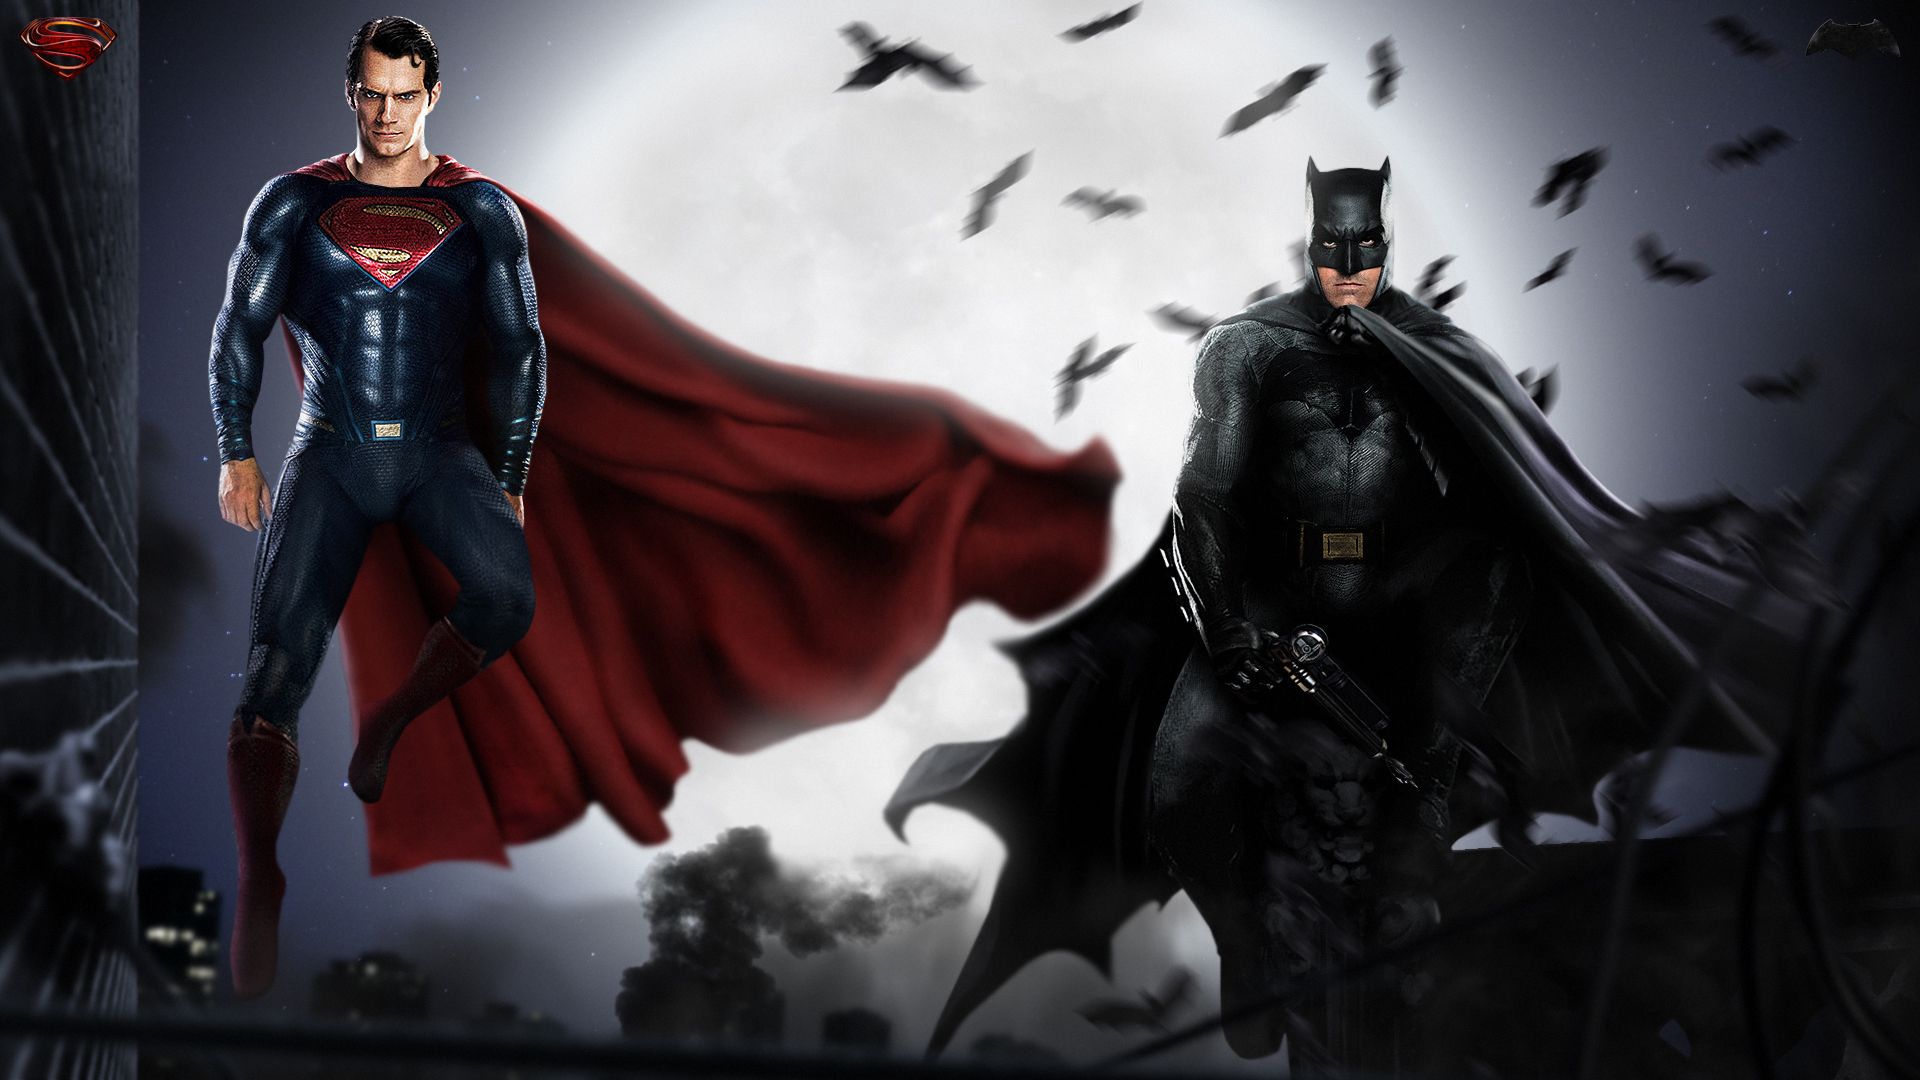 HQ Batman Vs Superman Wallpaper | Full HD Pictures